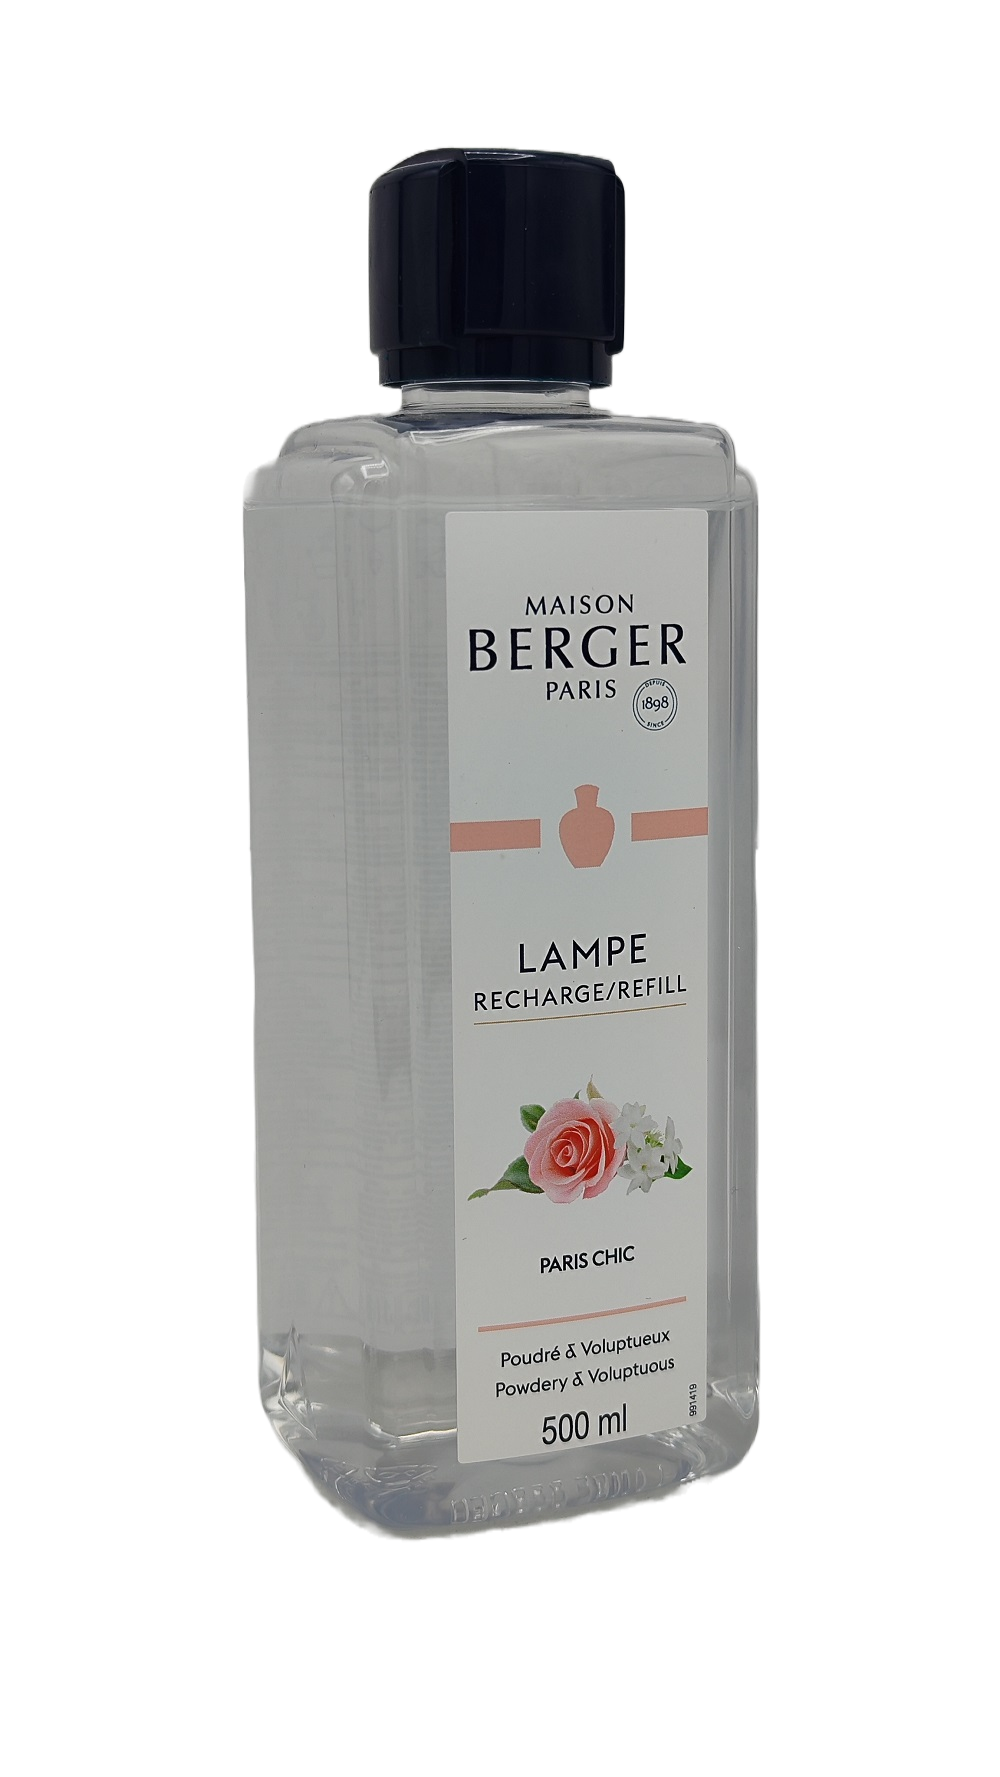 Paris Chic - Lampe Berger Refill 500 ml - Maison Berger